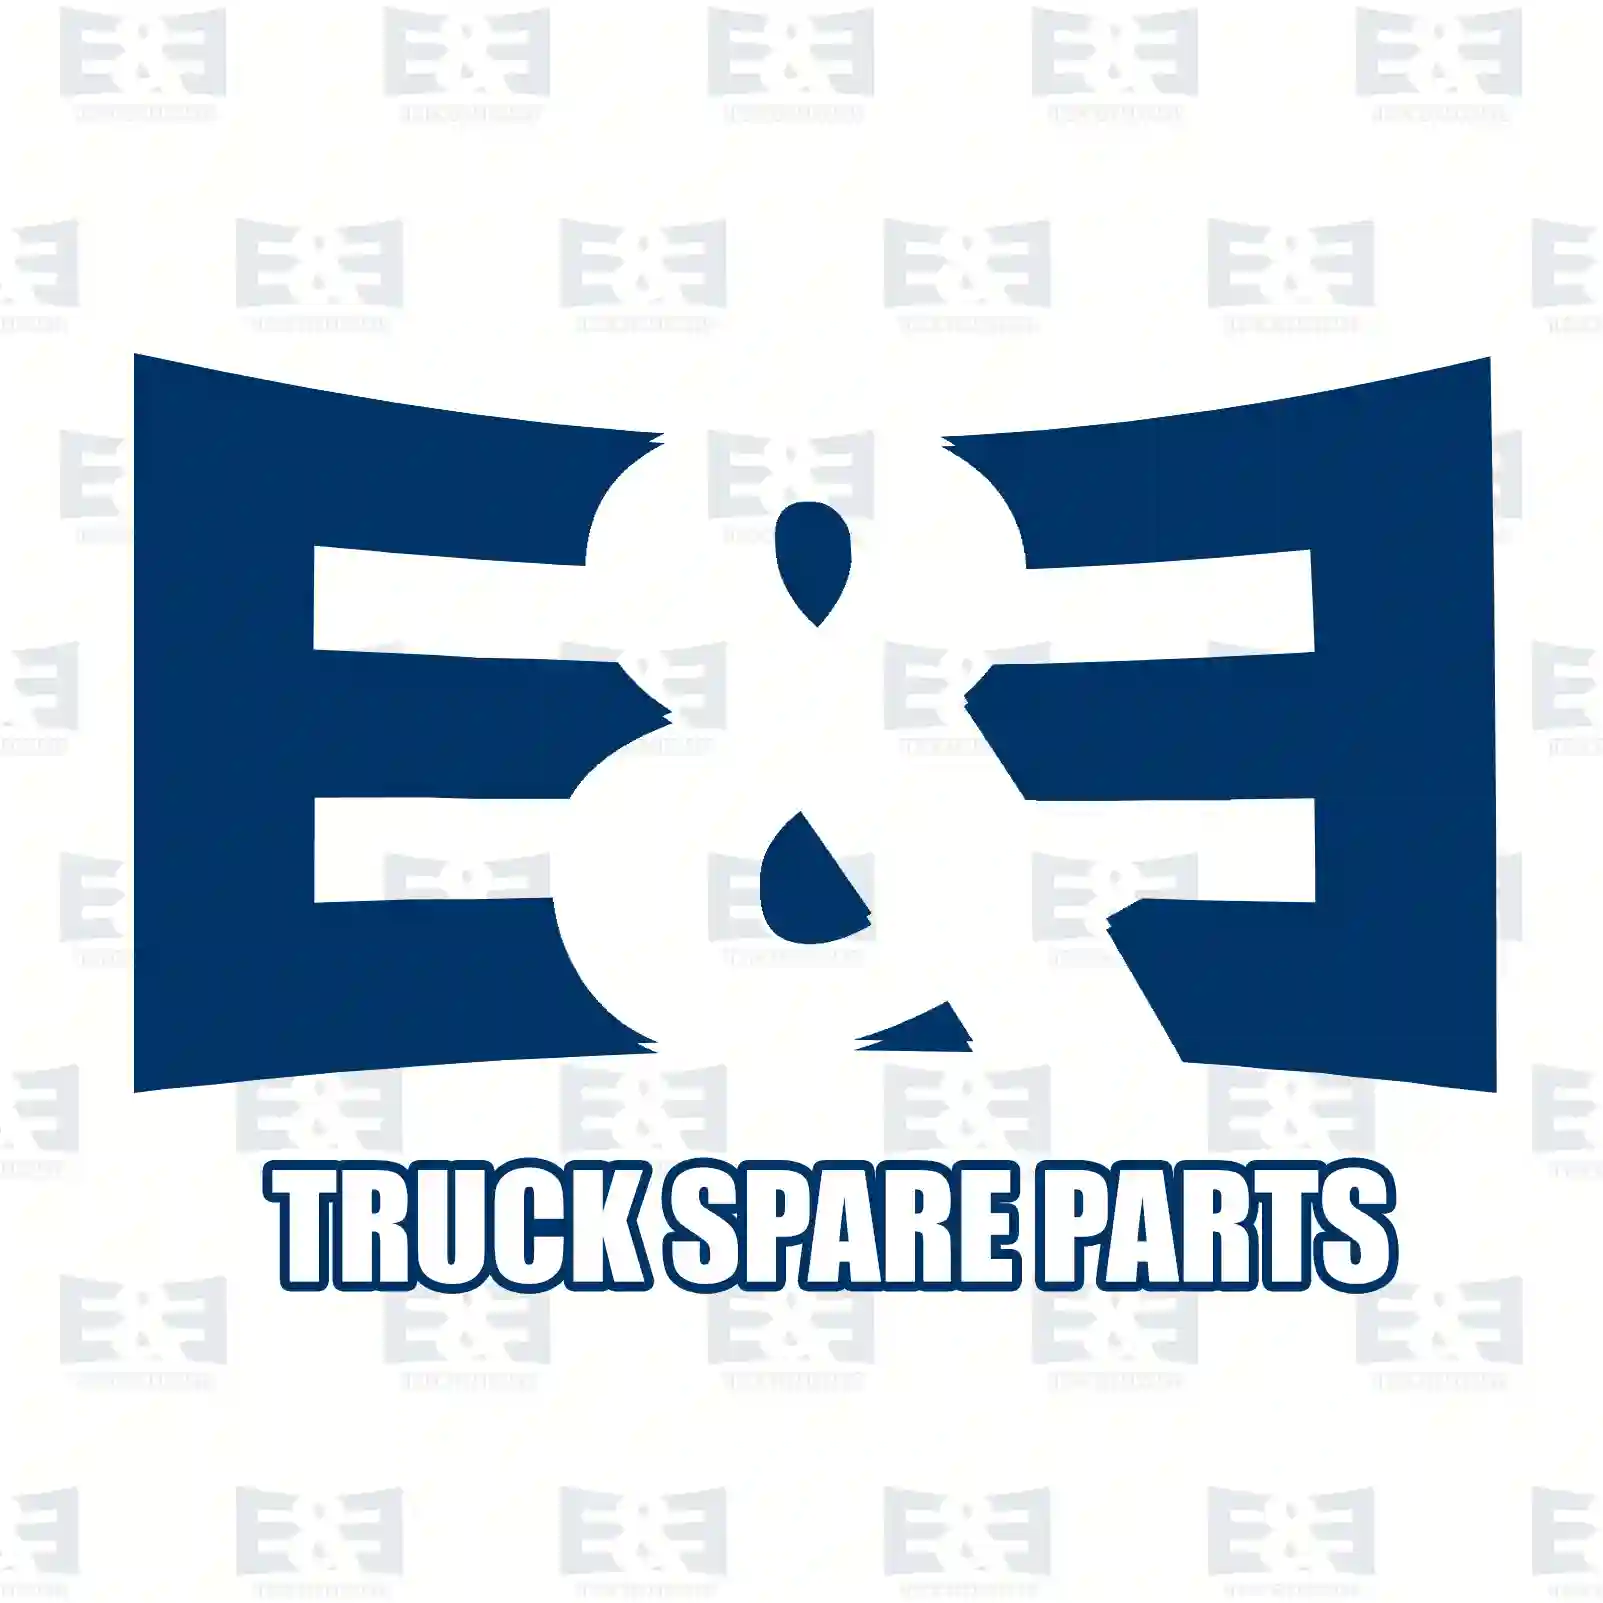 Compressor, 2E2296755, 51541007028 ||  2E2296755 E&E Truck Spare Parts | Truck Spare Parts, Auotomotive Spare Parts Compressor, 2E2296755, 51541007028 ||  2E2296755 E&E Truck Spare Parts | Truck Spare Parts, Auotomotive Spare Parts